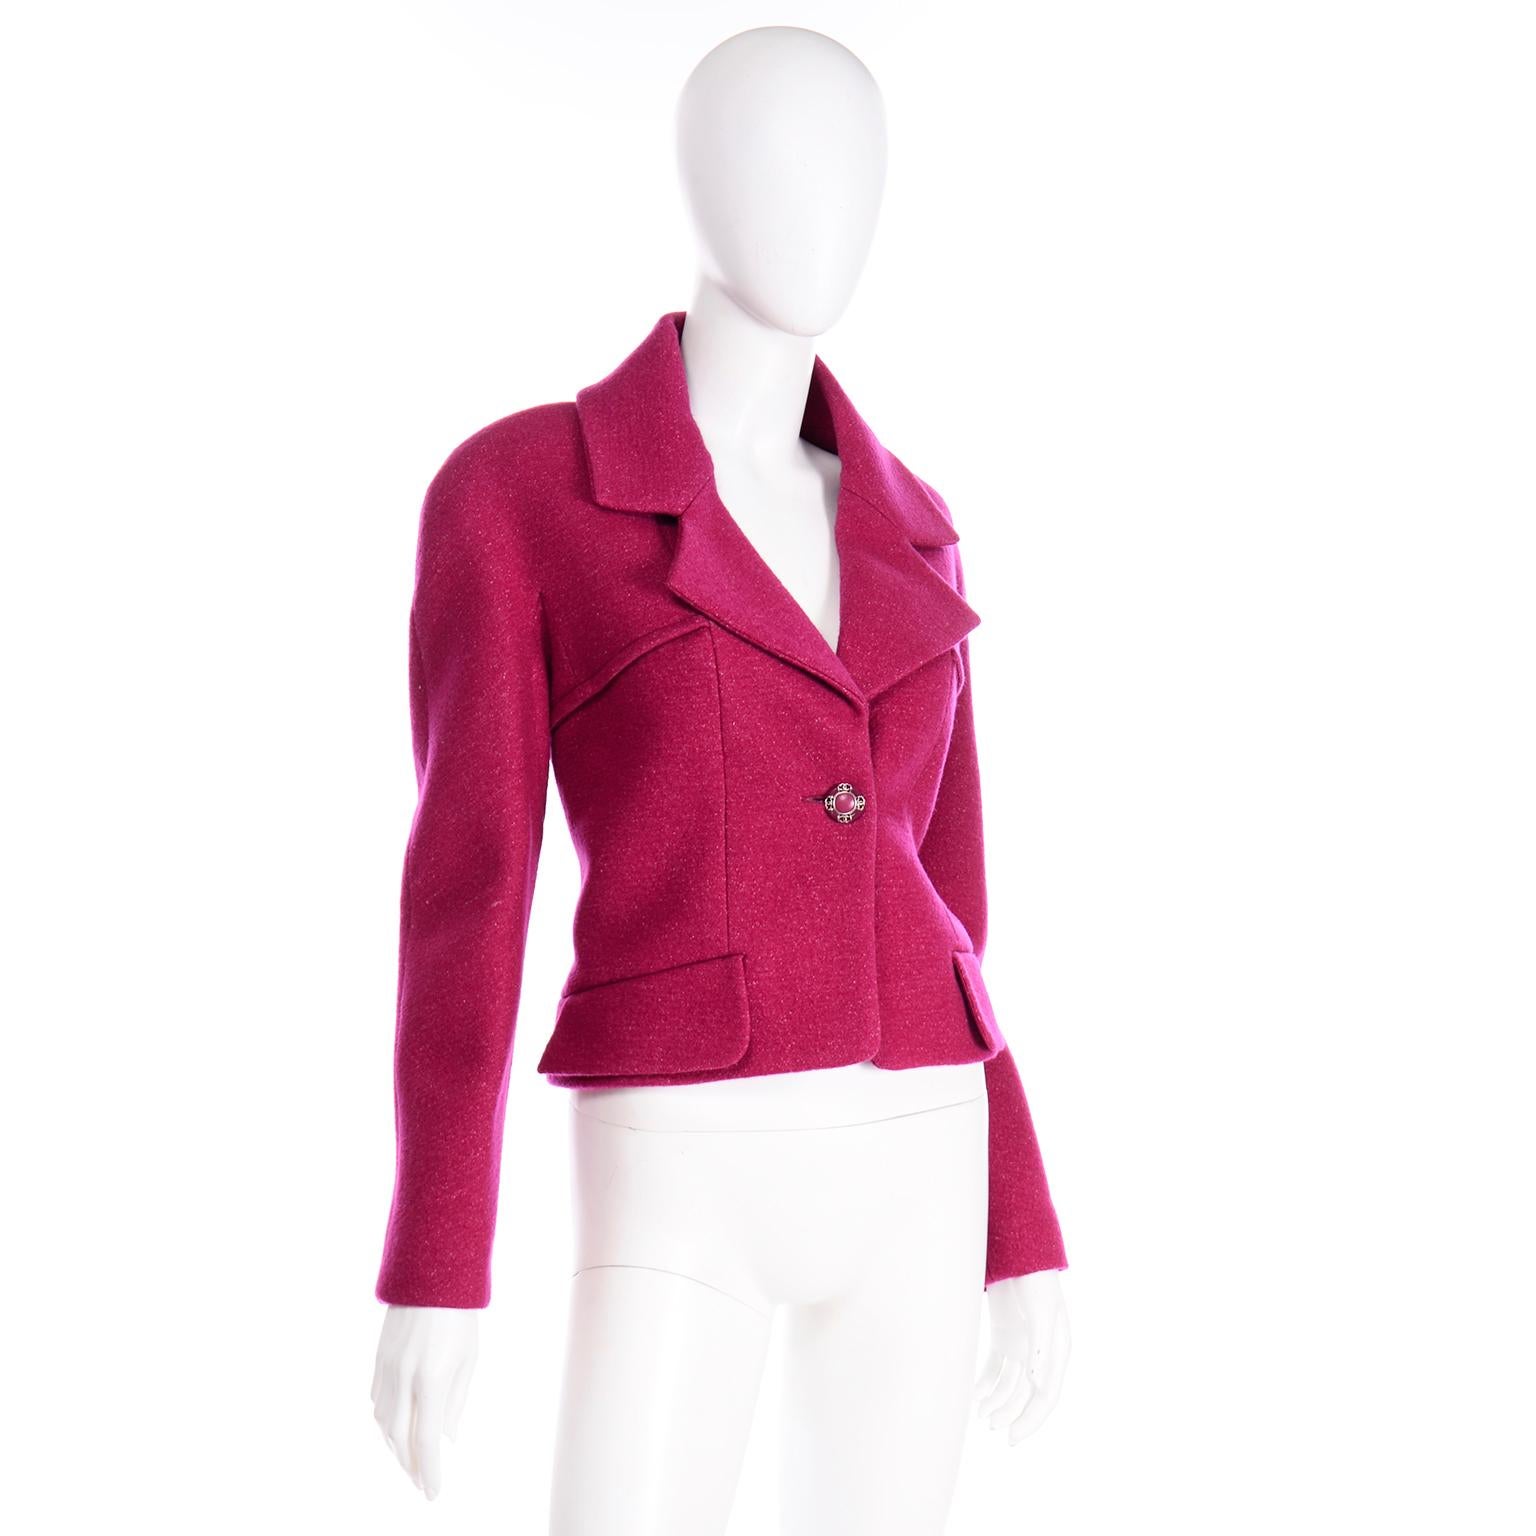 raspberry pink jacket